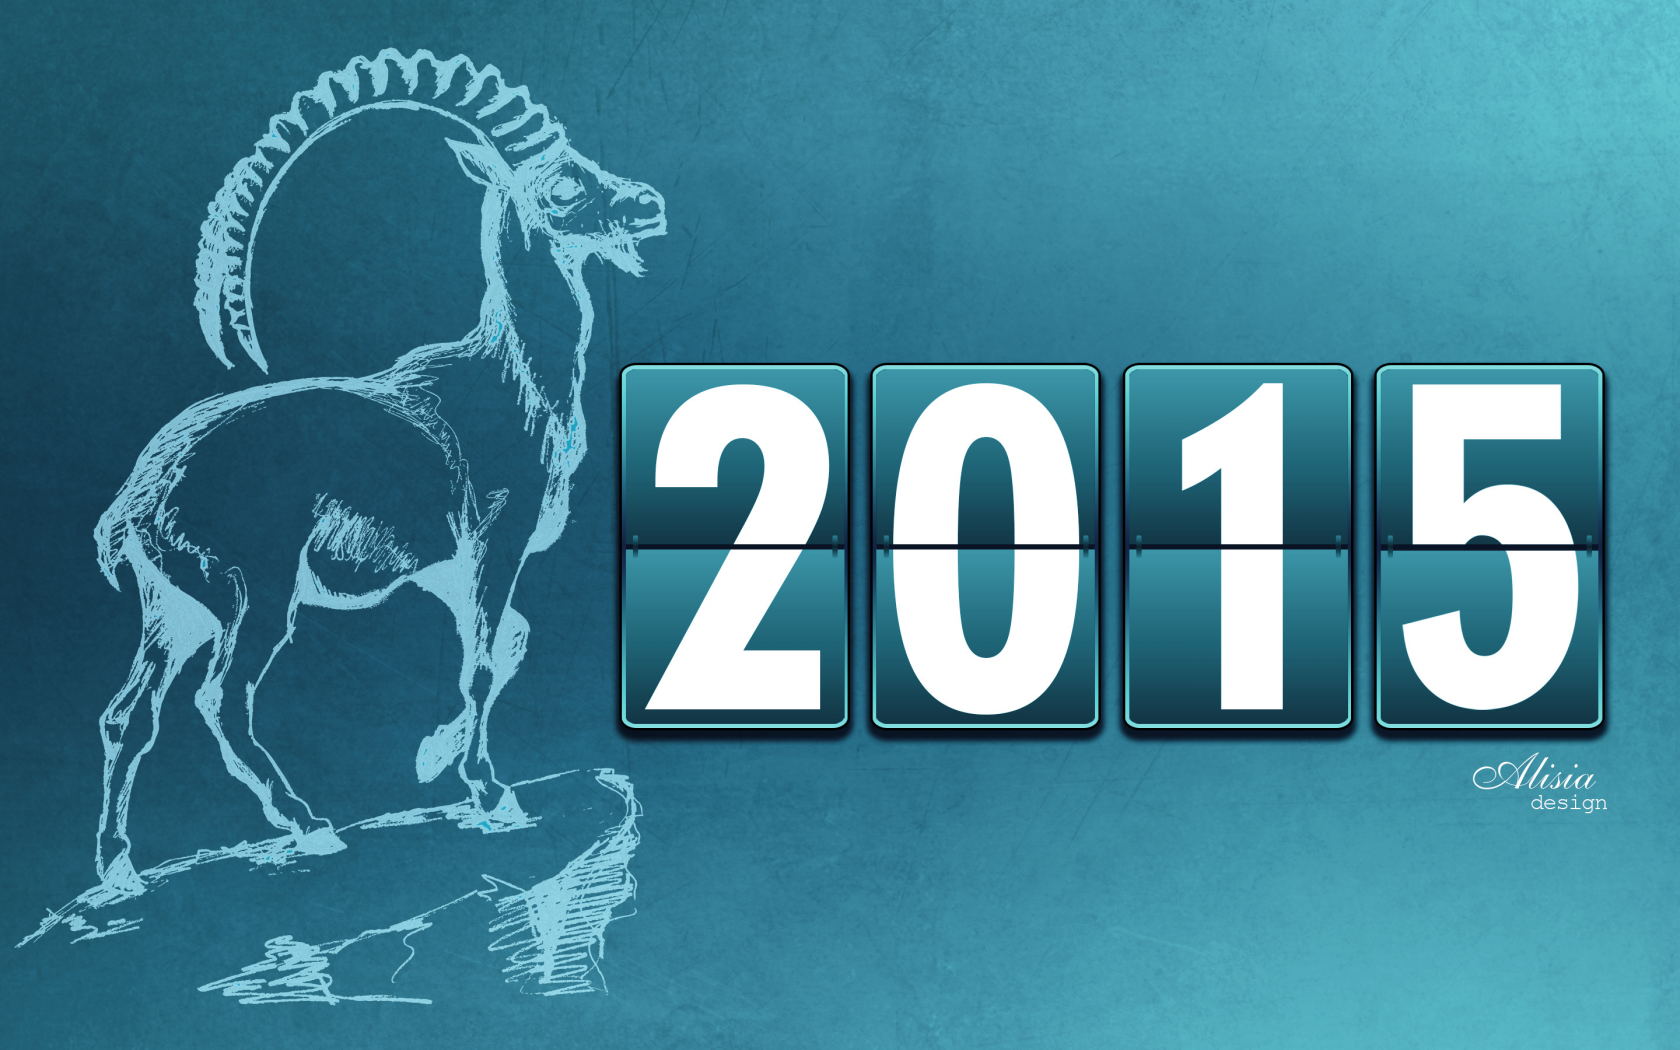 2015, новый год, надпись, новогодние, козел, год козы